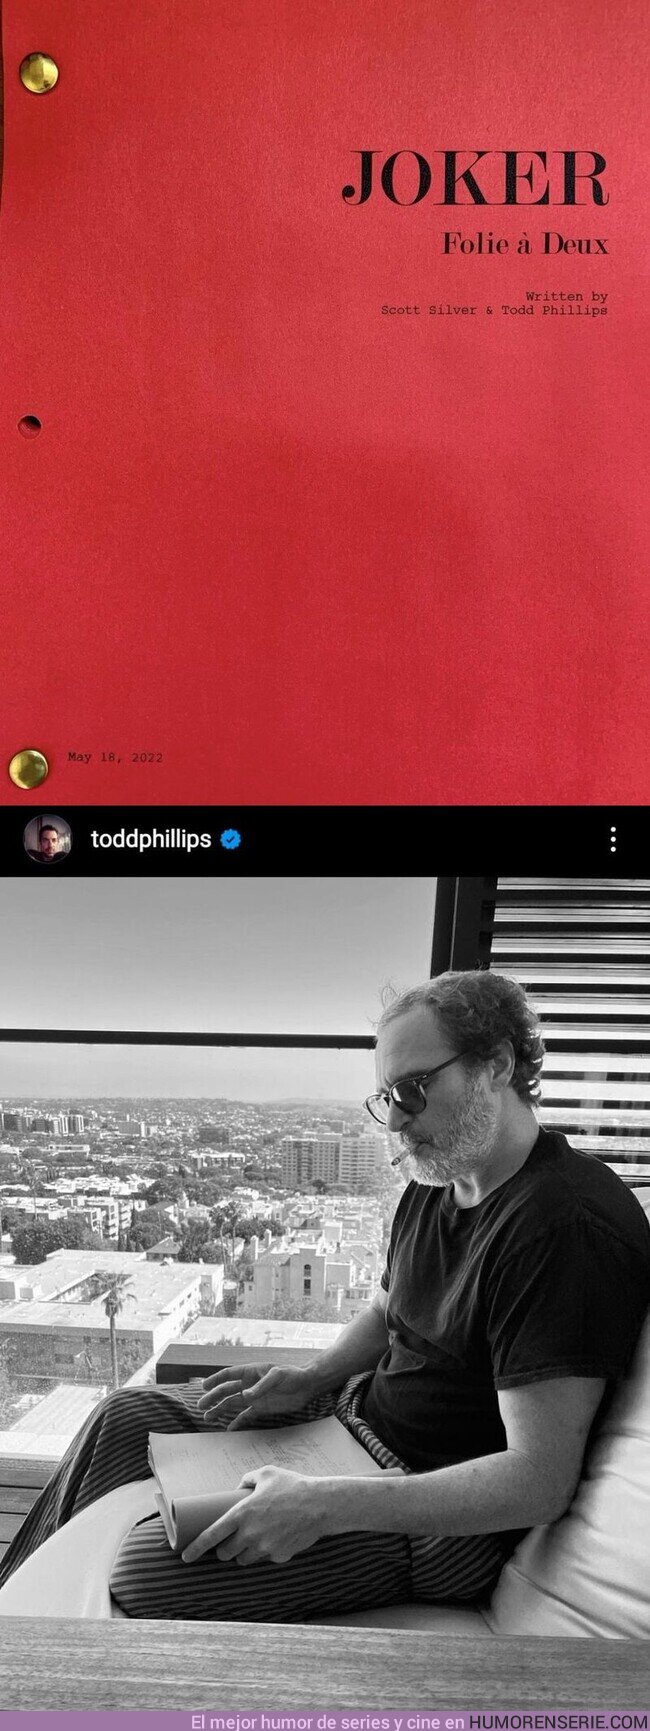 101239 - El director Todd Phillips comparte la portada del guion de #Joker2 y una foto de Joaquin Phoenix leyéndolo, por @TheTopComics